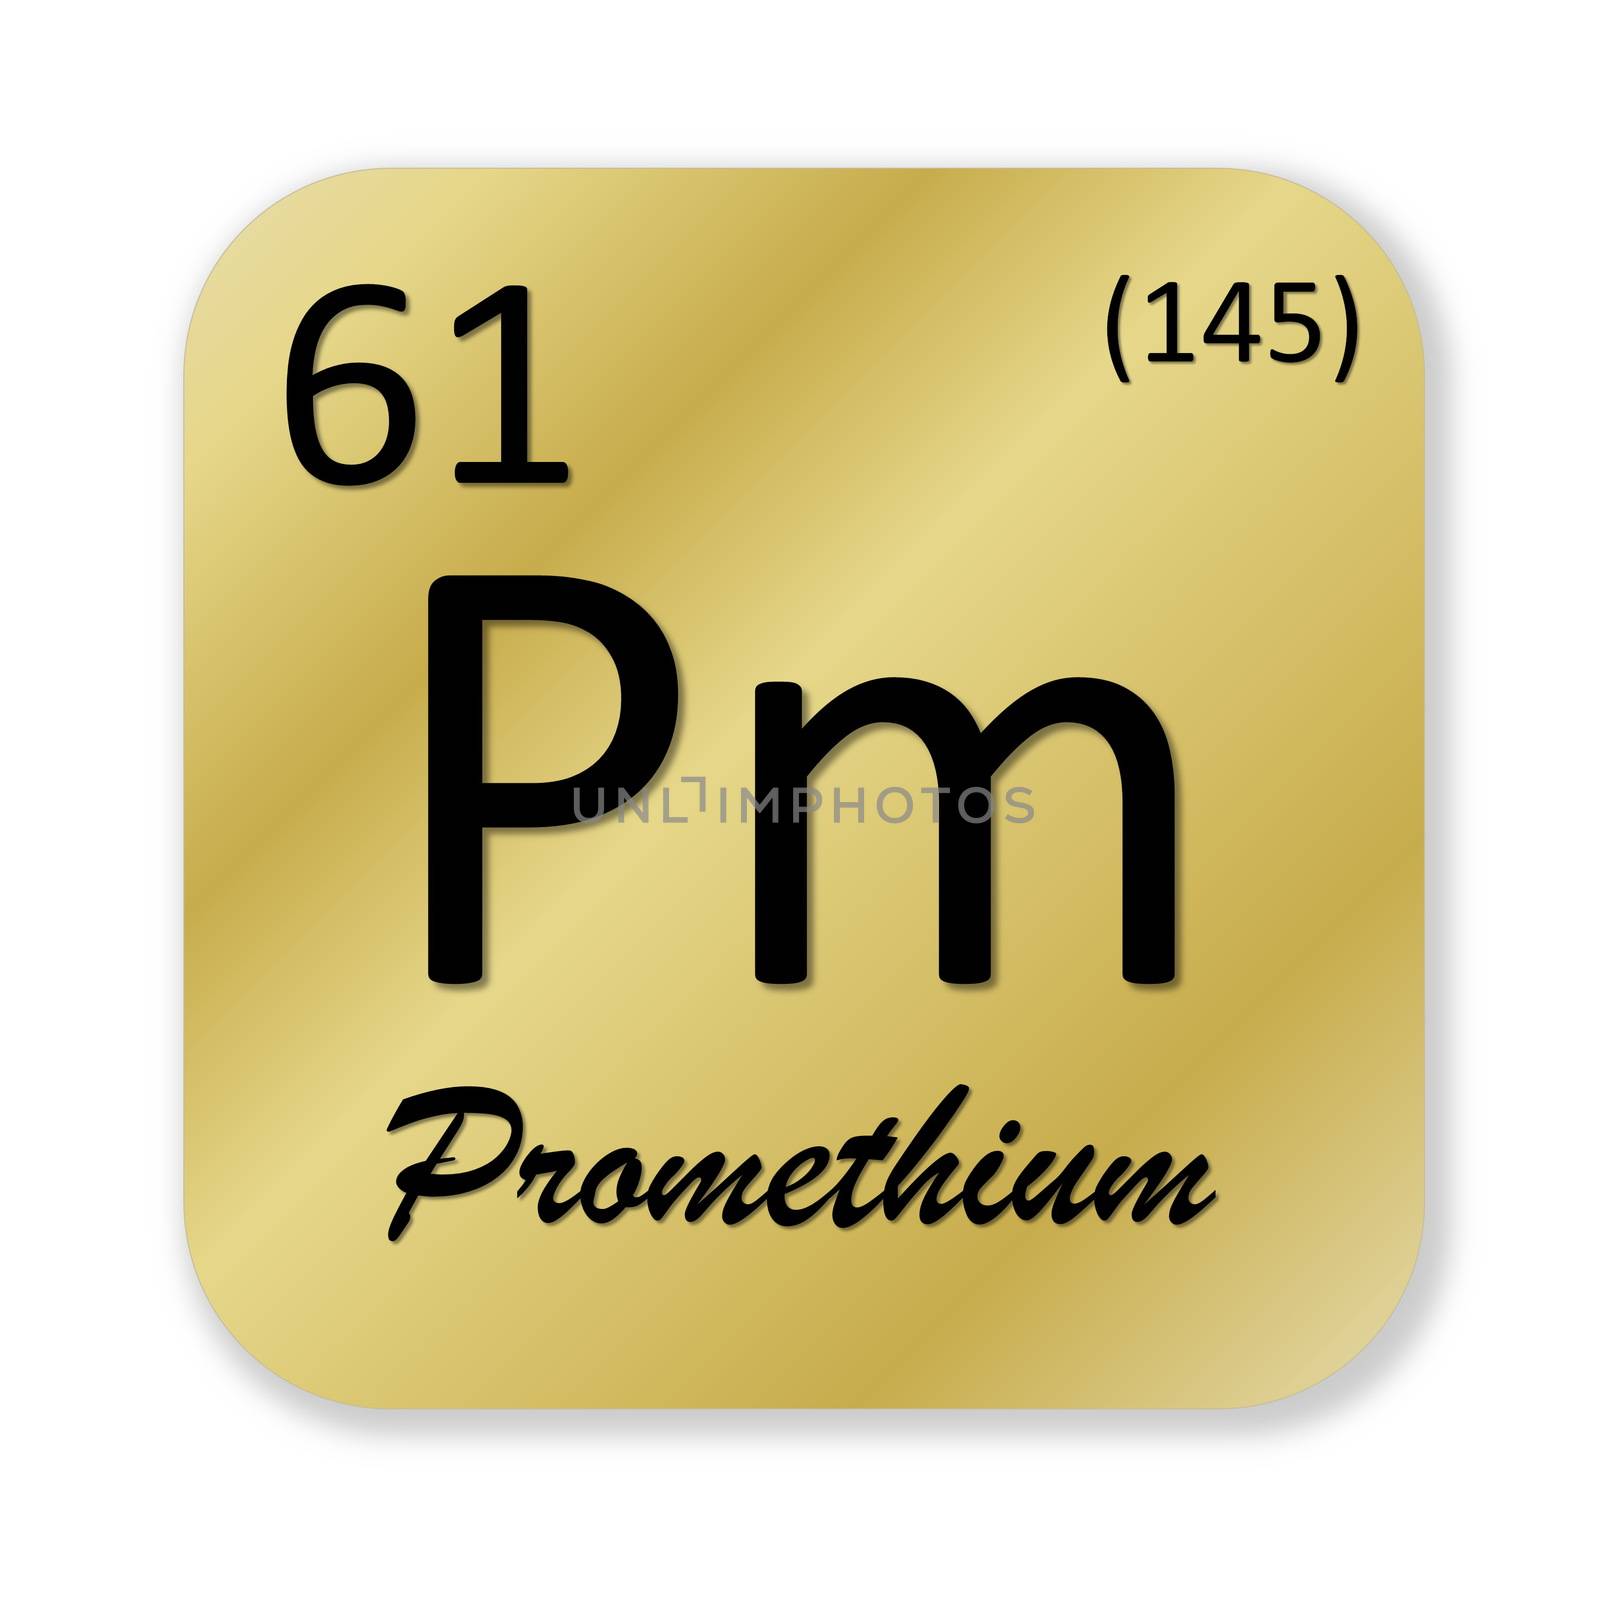 Promethium element by Elenaphotos21